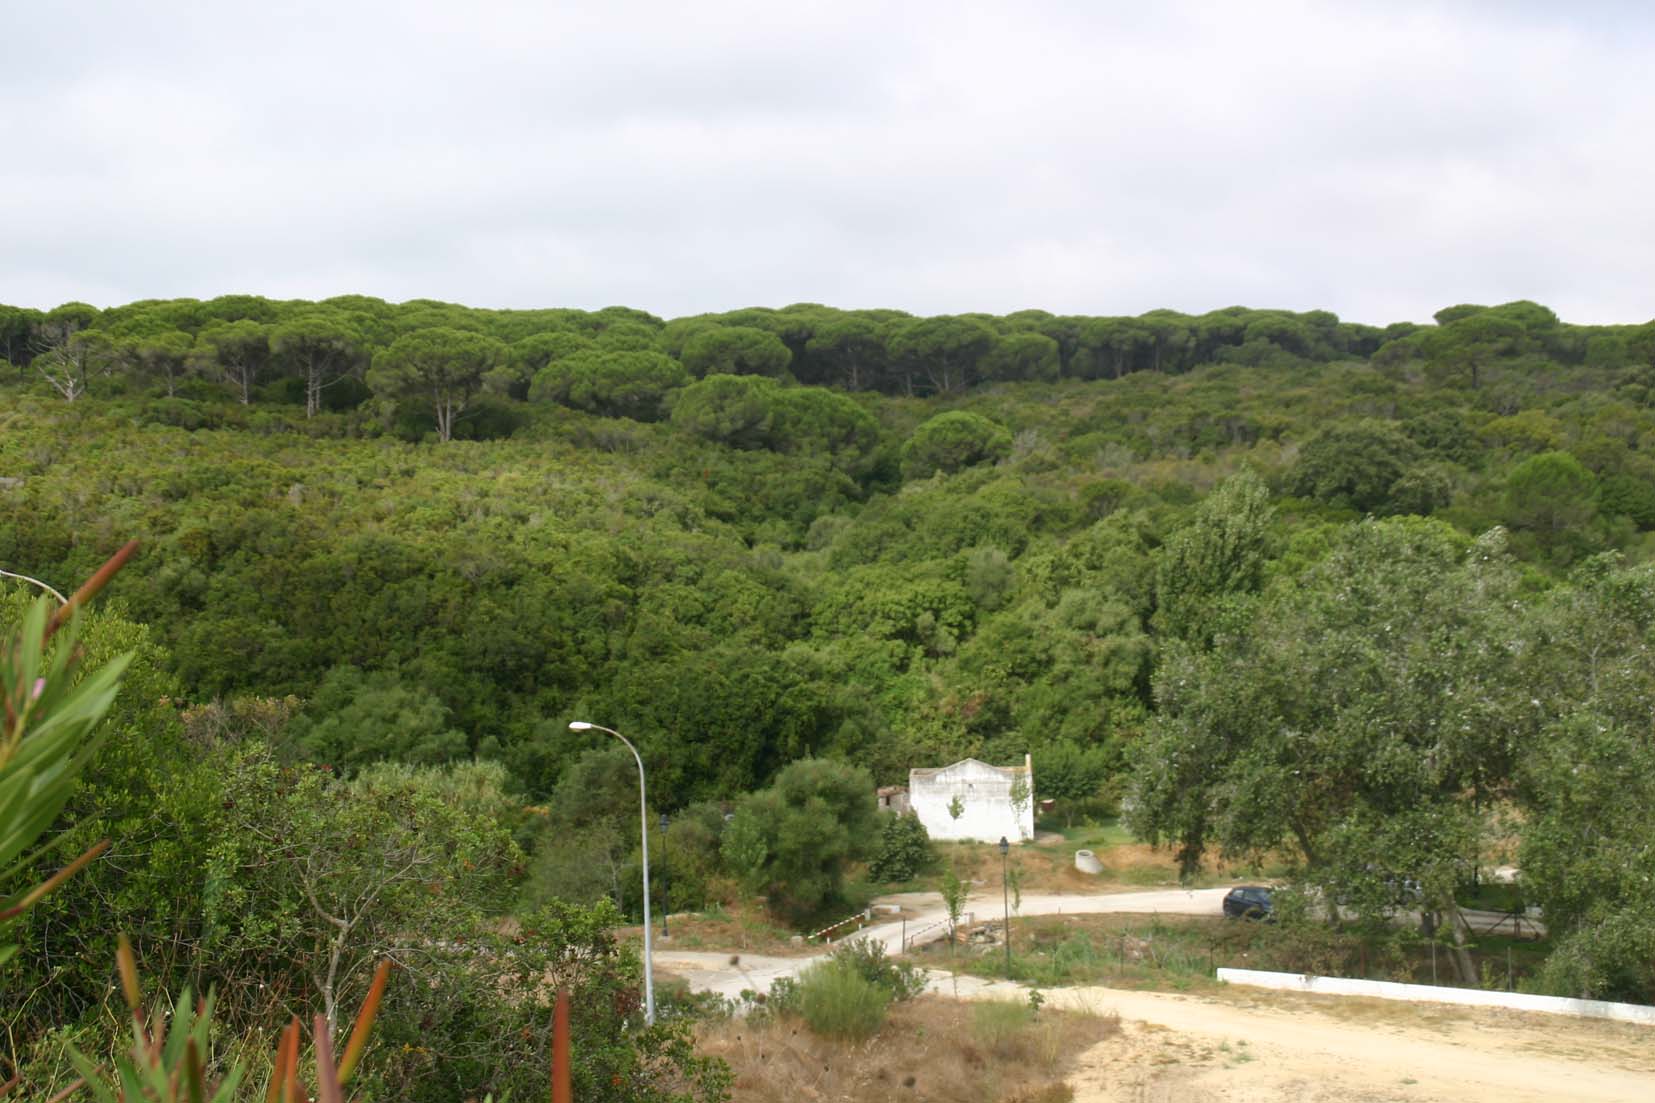 La Comisión Europea dice que los hábitats naturales son un "obstáculo insalvable" para el megaproyecto urbanístico de Barbate